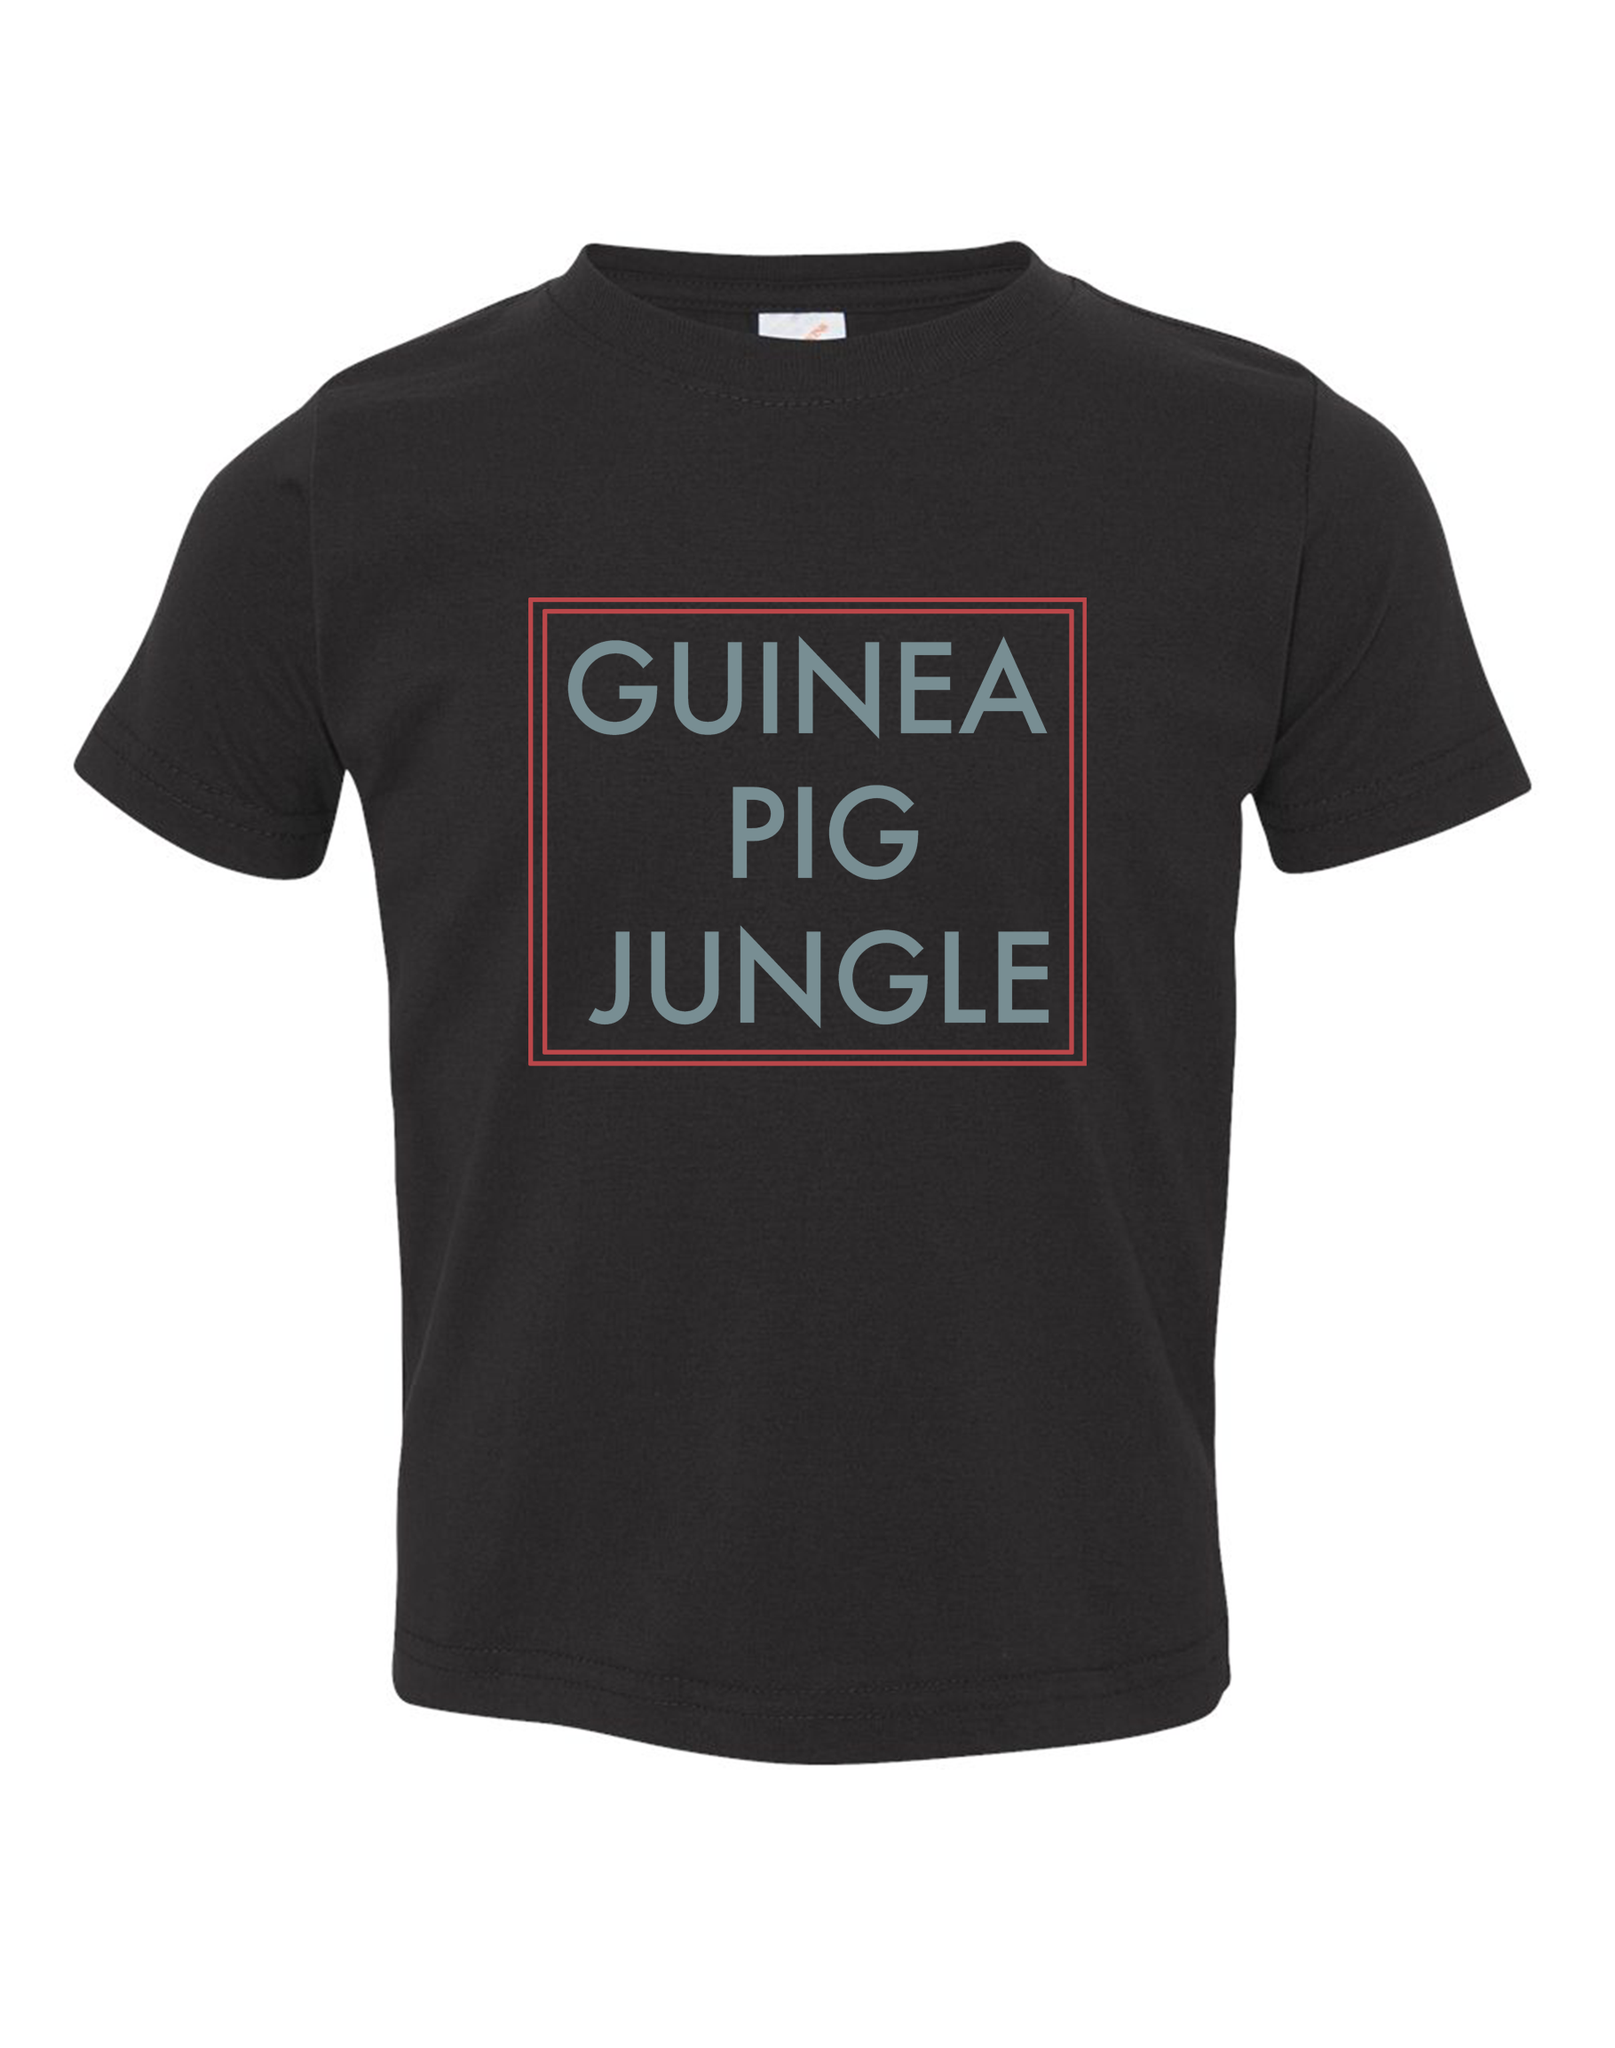 Guinea Pig Jungle Toddler T-Shirt : Guinea Pig Jungle Shirt